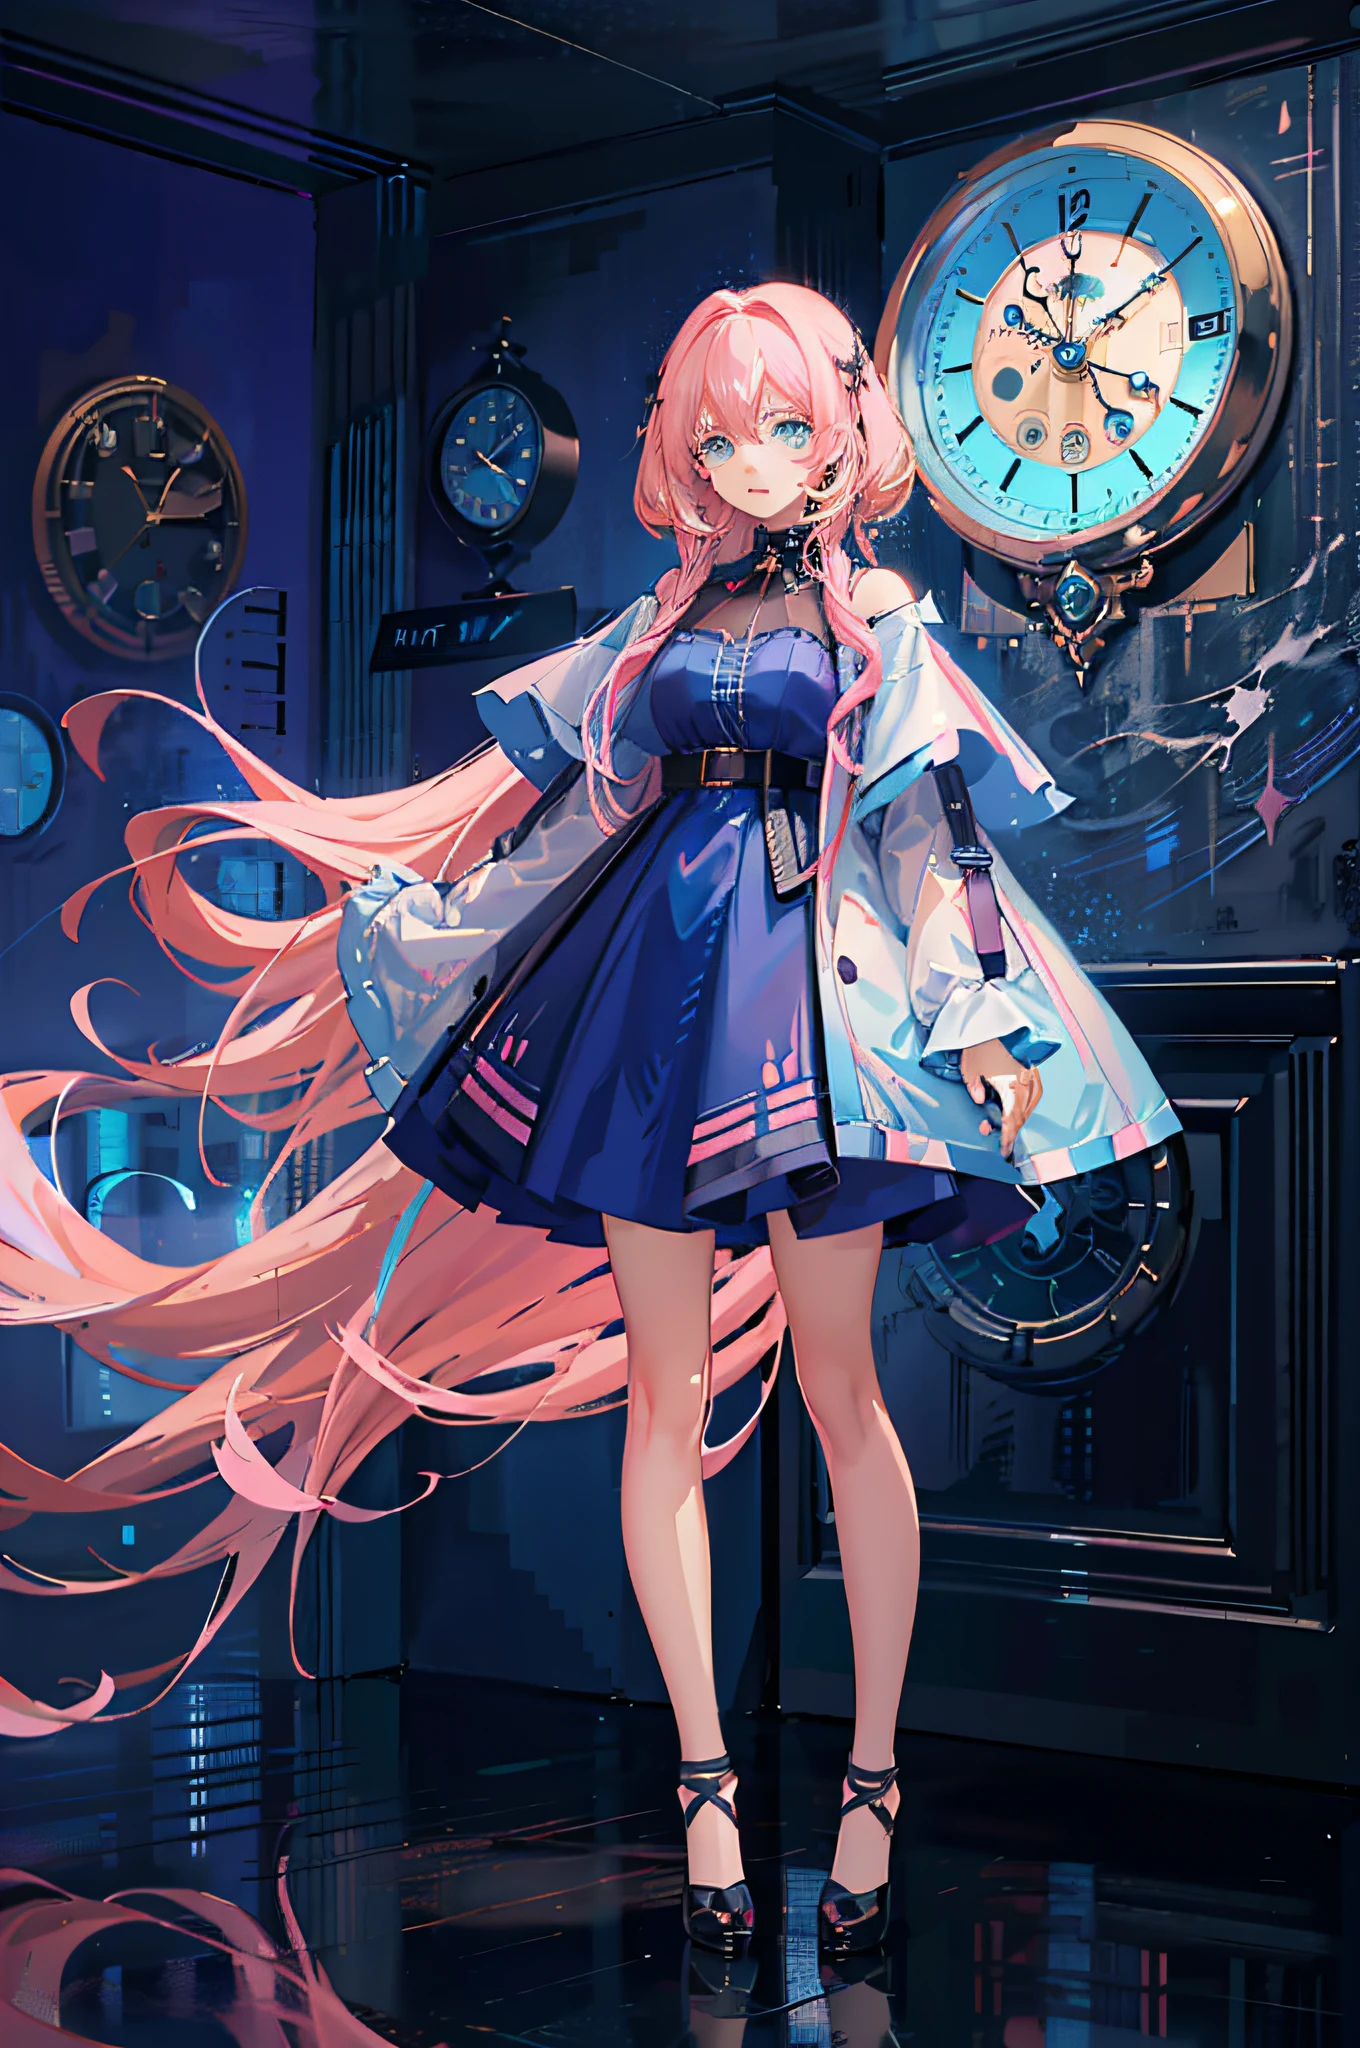 (Ультрадетализированный аниме-шедевр компьютерной графики, 4к аниме стиль) аниме девушка с (Длинные розовые волосы+Голубые глаза) стоя перед (элегантные настенные часы)+(размытый фон), носить один (сногсшибательное синее платье) и излучающий непреодолимую волшебную ауру.